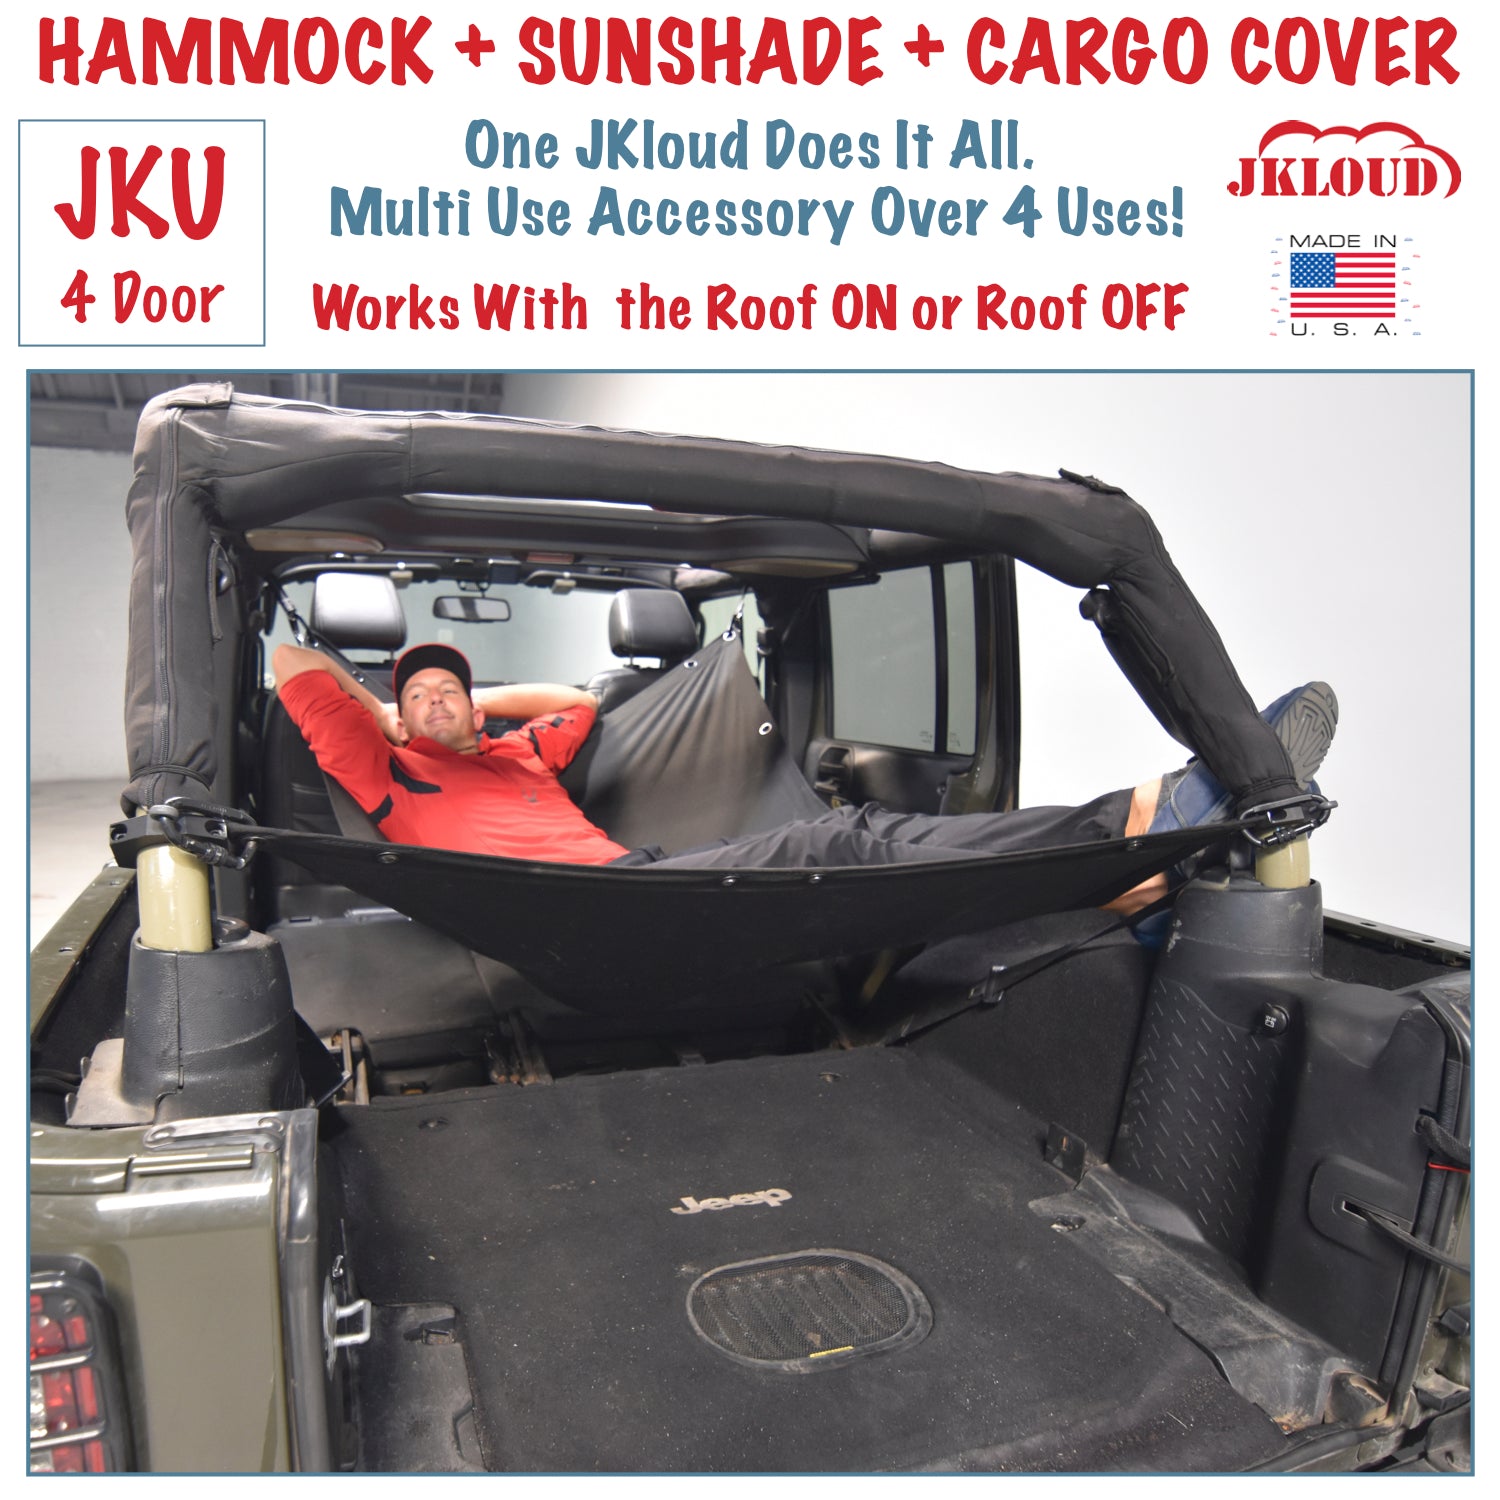 JKloud Hammock fitted for Jeep Wrangler JK 4 Door | Jkloud